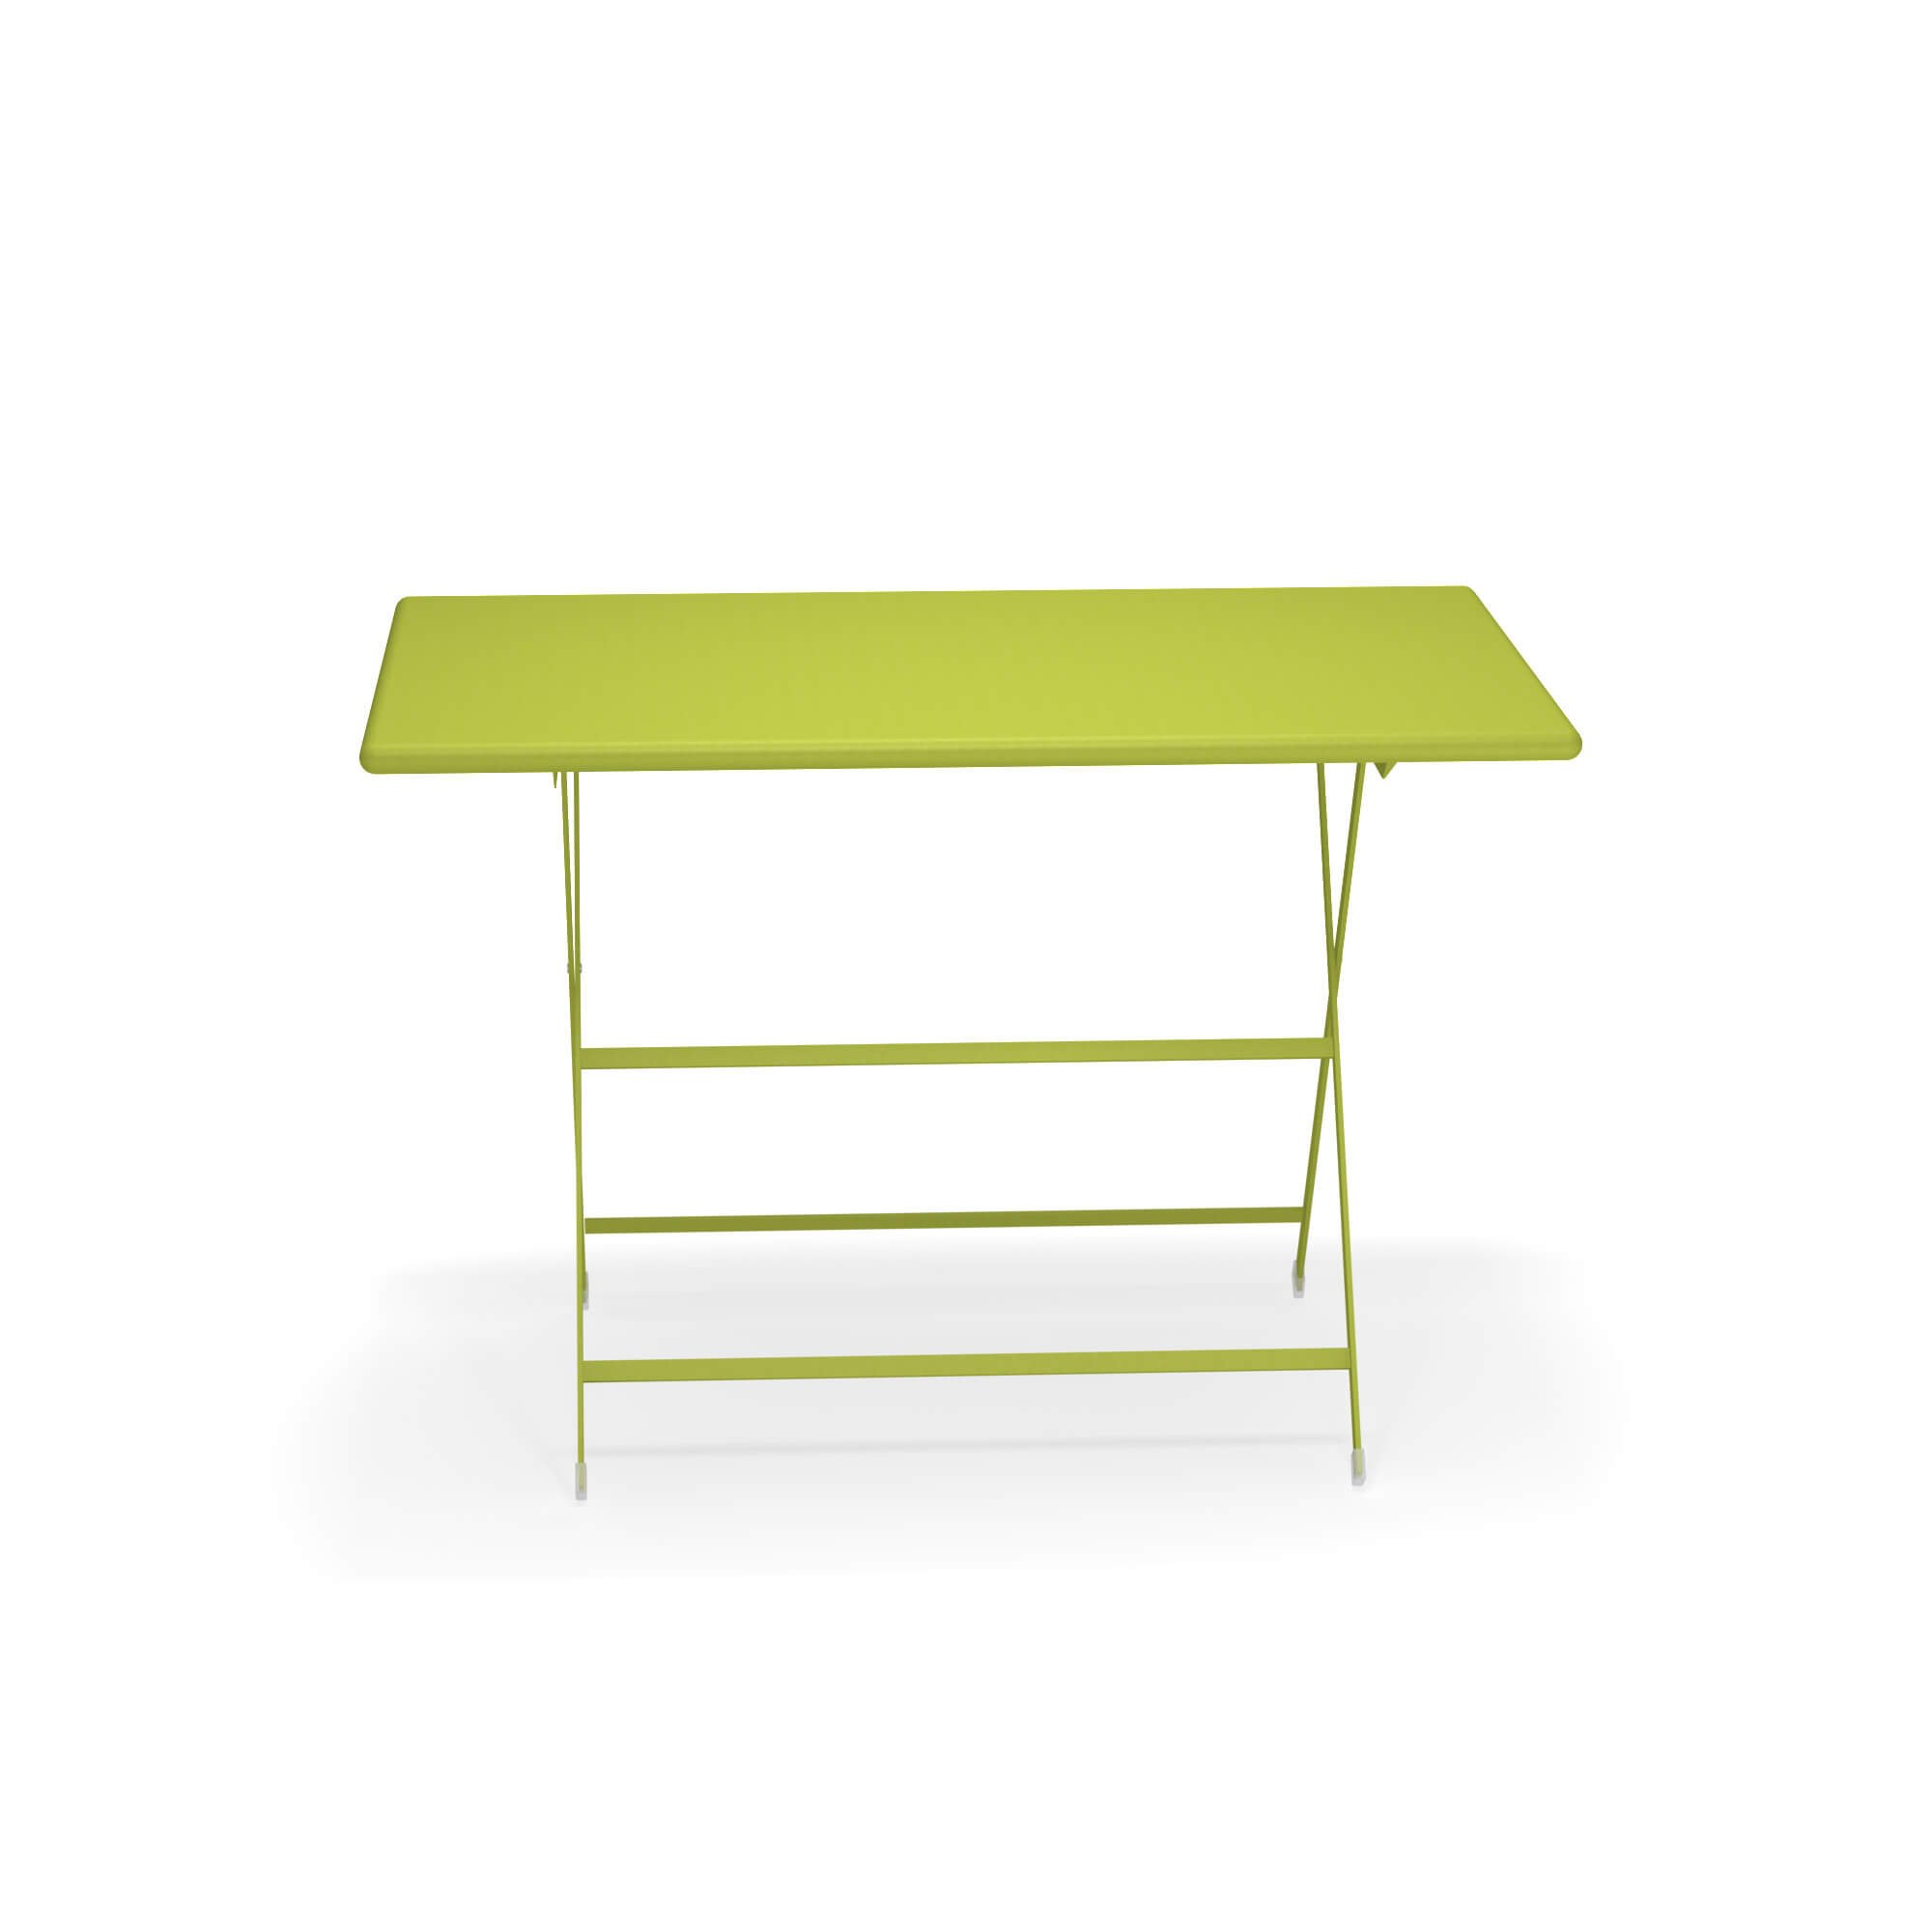 Arc en Ciel Folding Table  from Emu, designed by EMU Design Studio